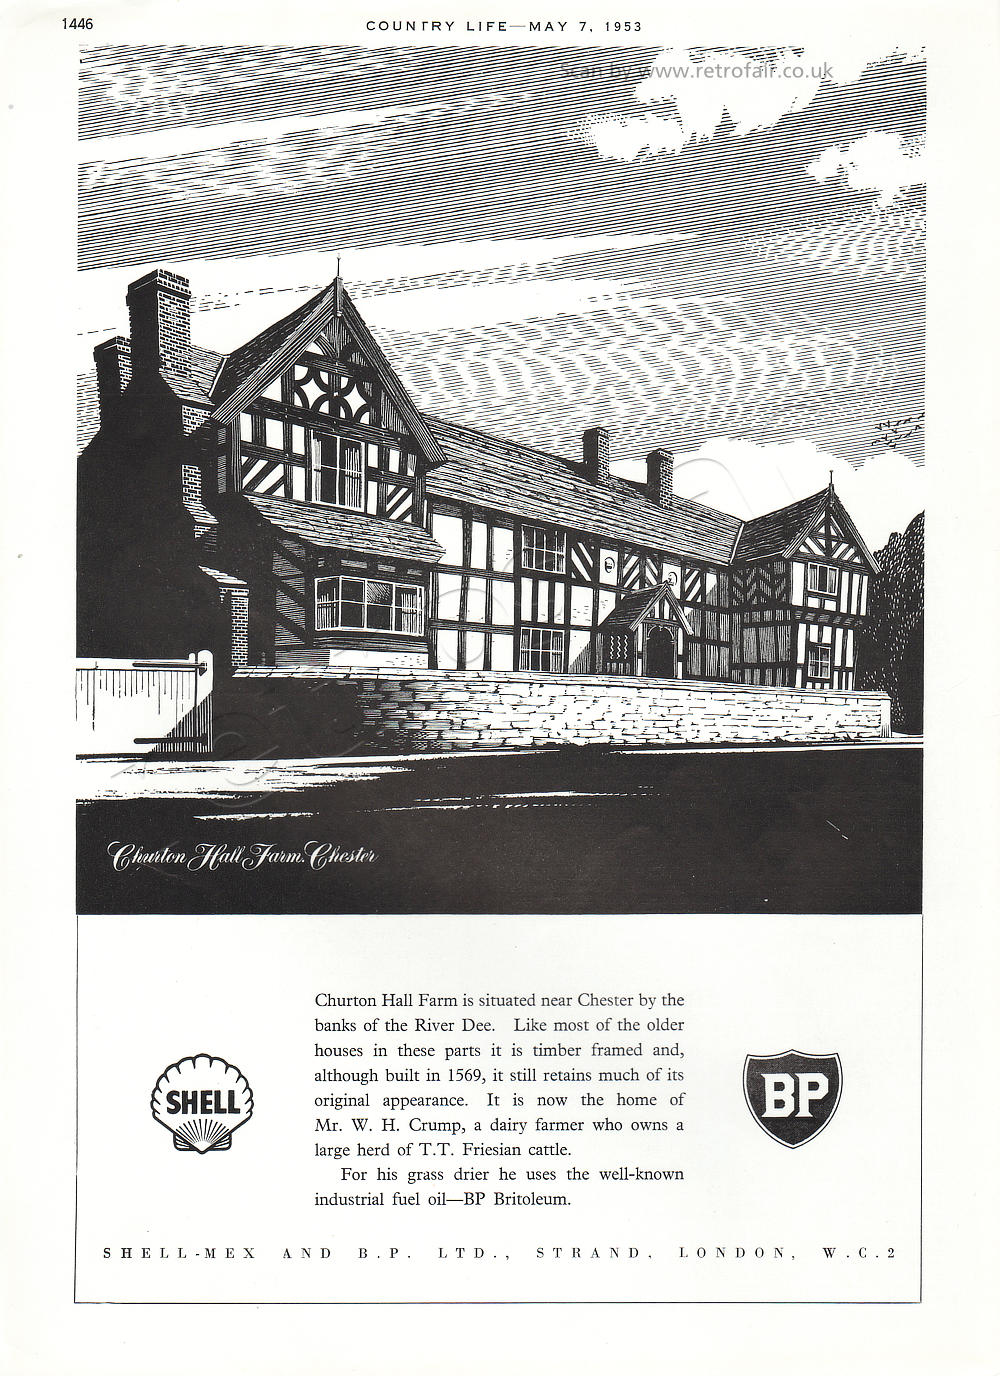 1953 Shell-Mex BP Churton Hall 